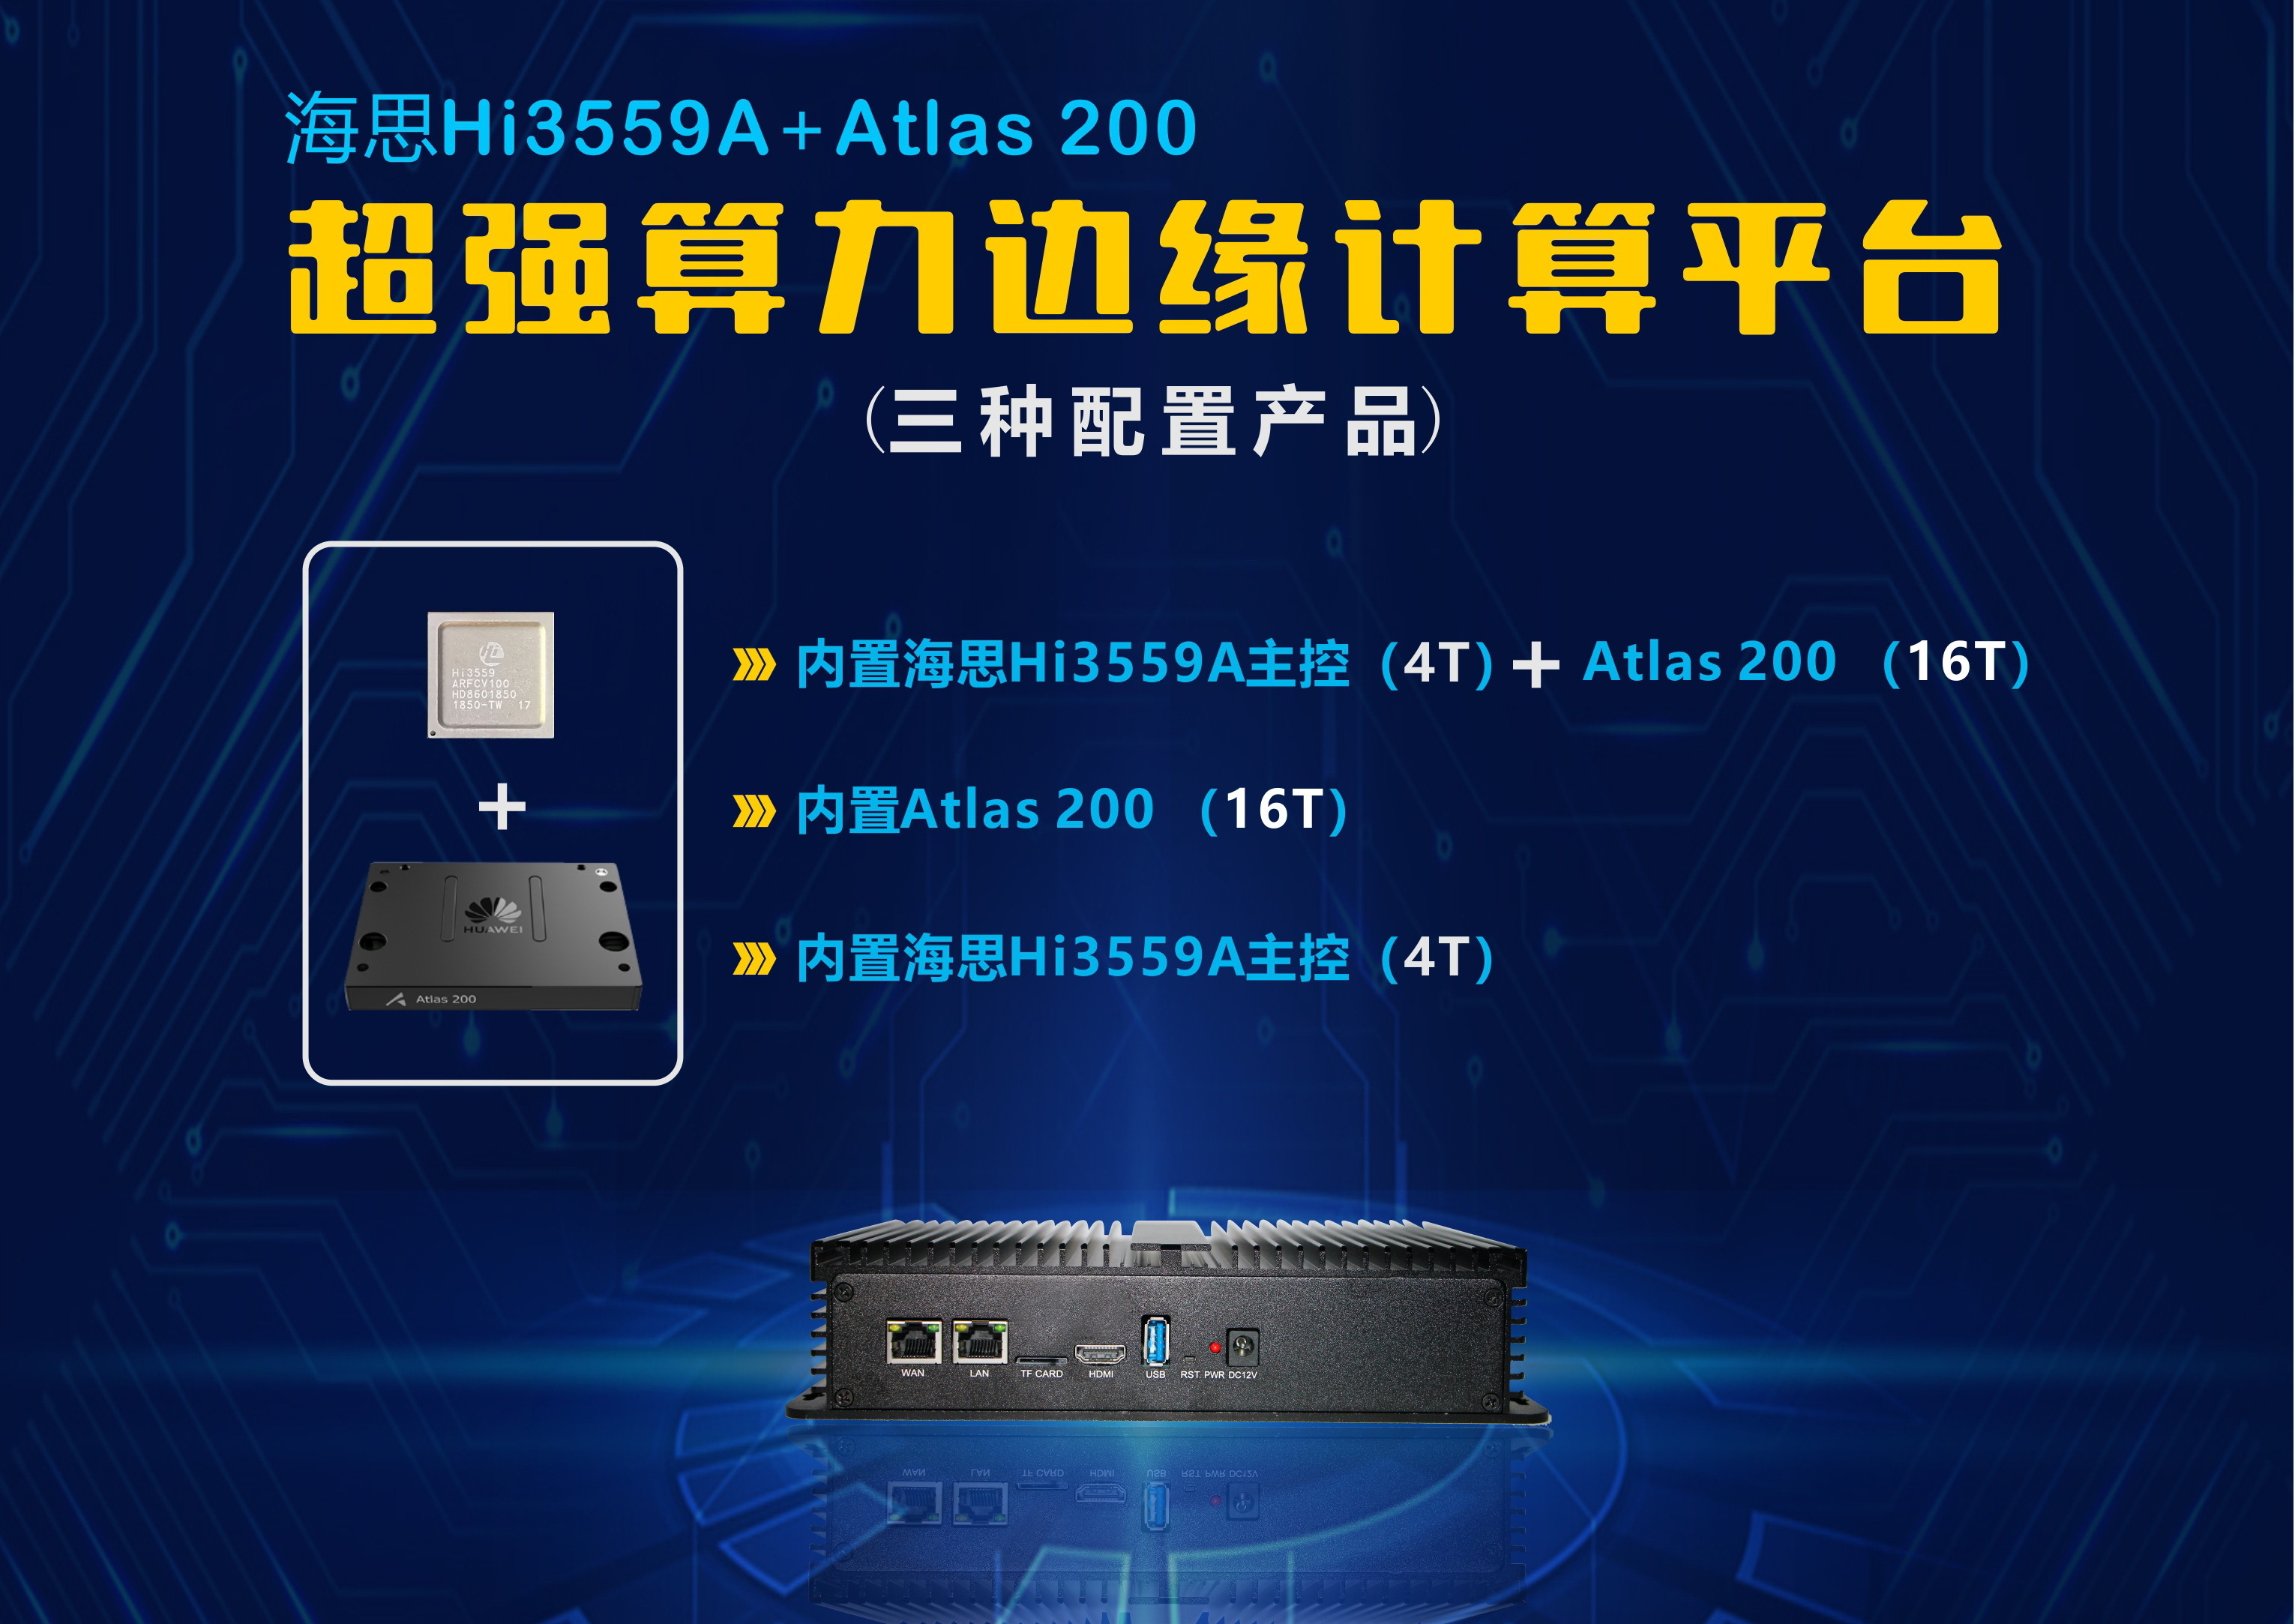 基于海思Hi3559A或者Atlas_200模块，Hi3559A(主)+Atlas_200（从）开发AI加速边缘计算主板的三种模式